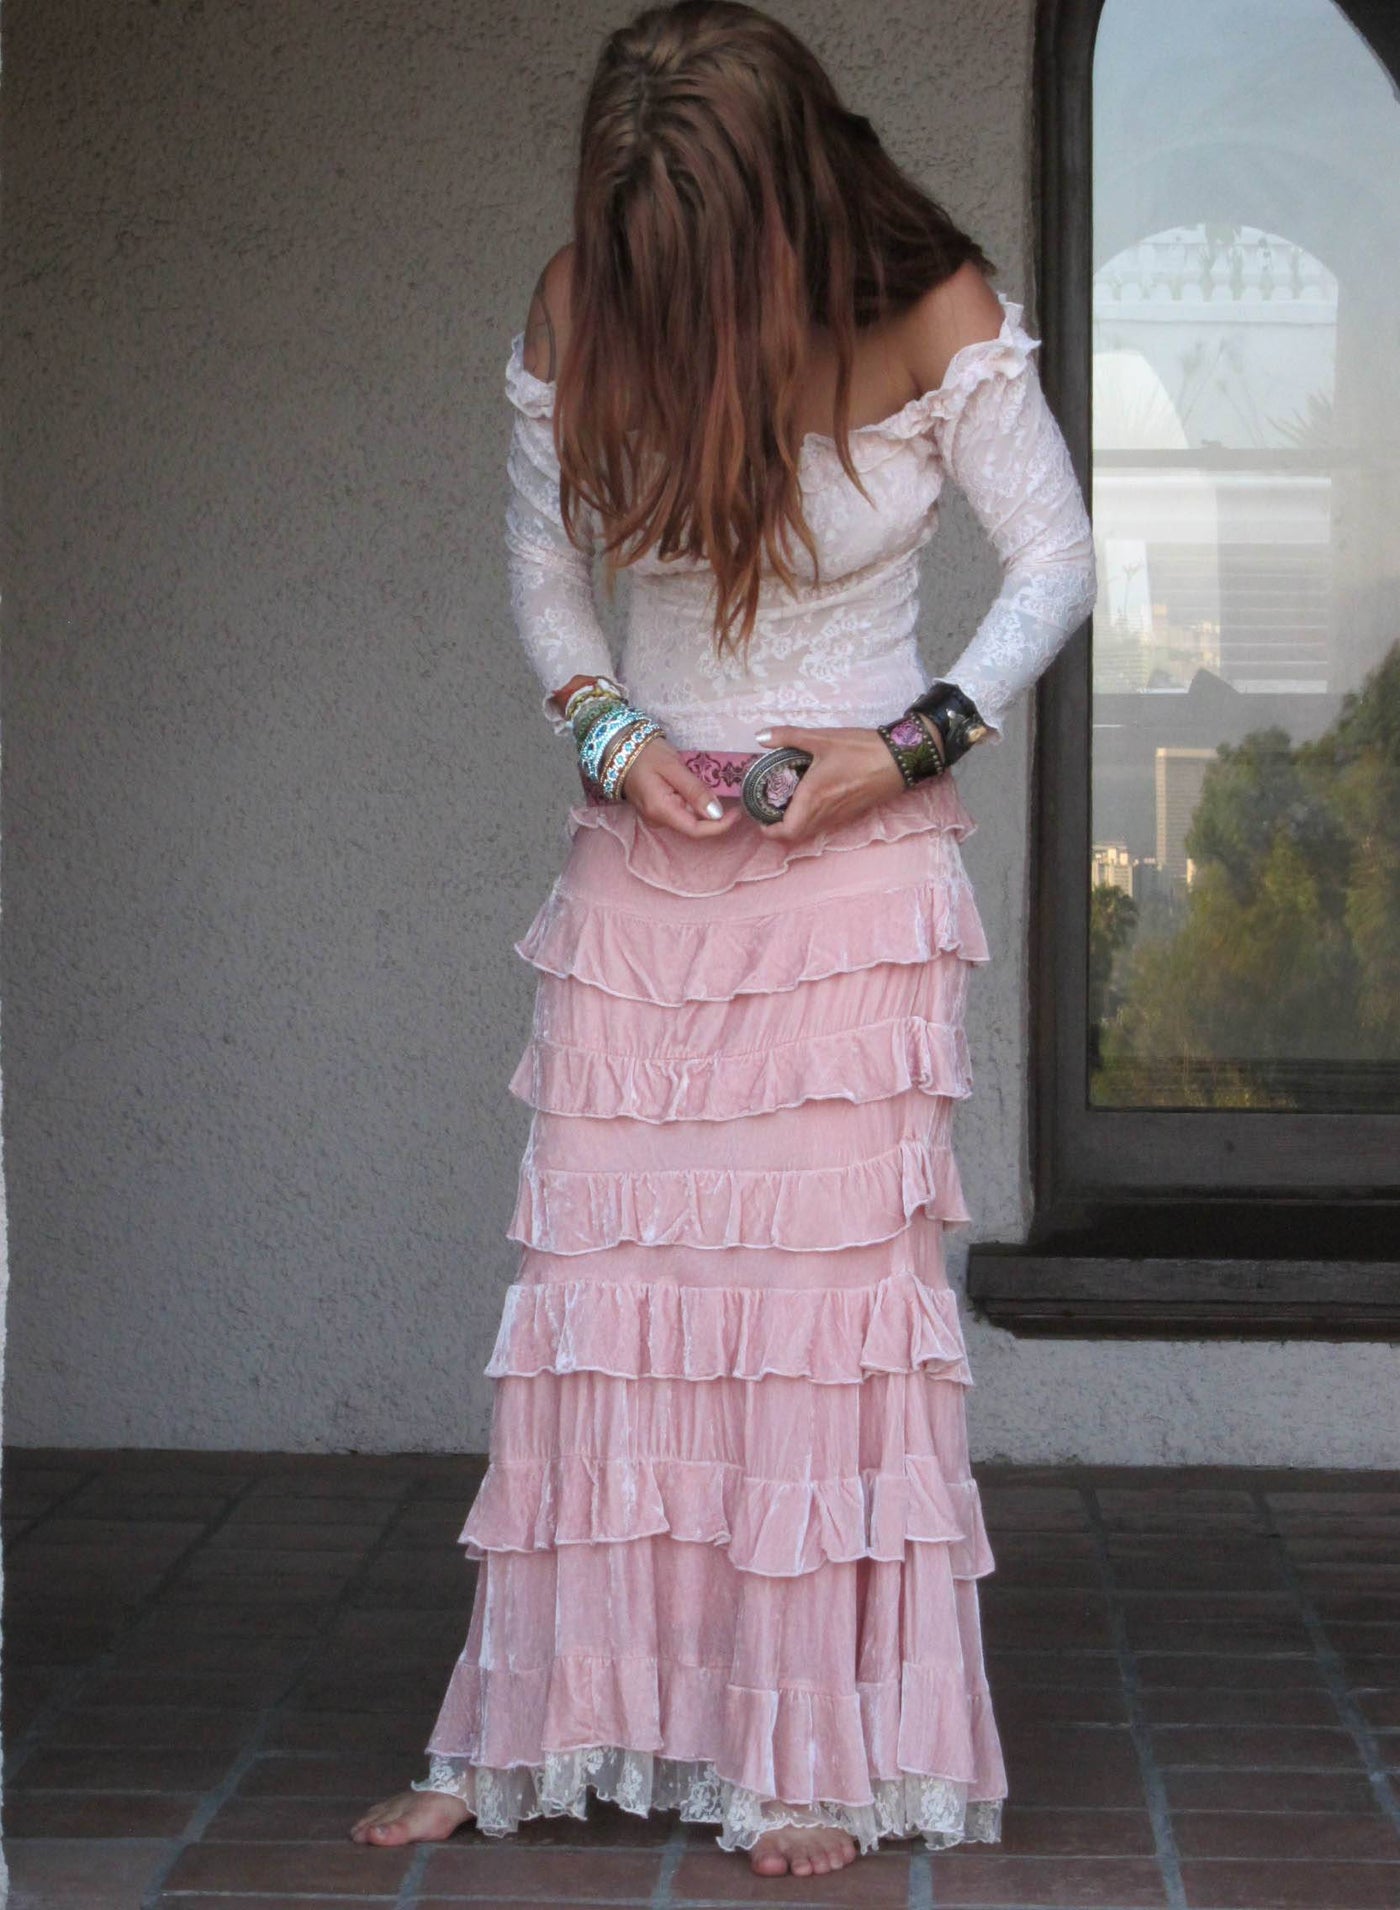 Velvet Princess Skirt in Pink by Marrika Nakk